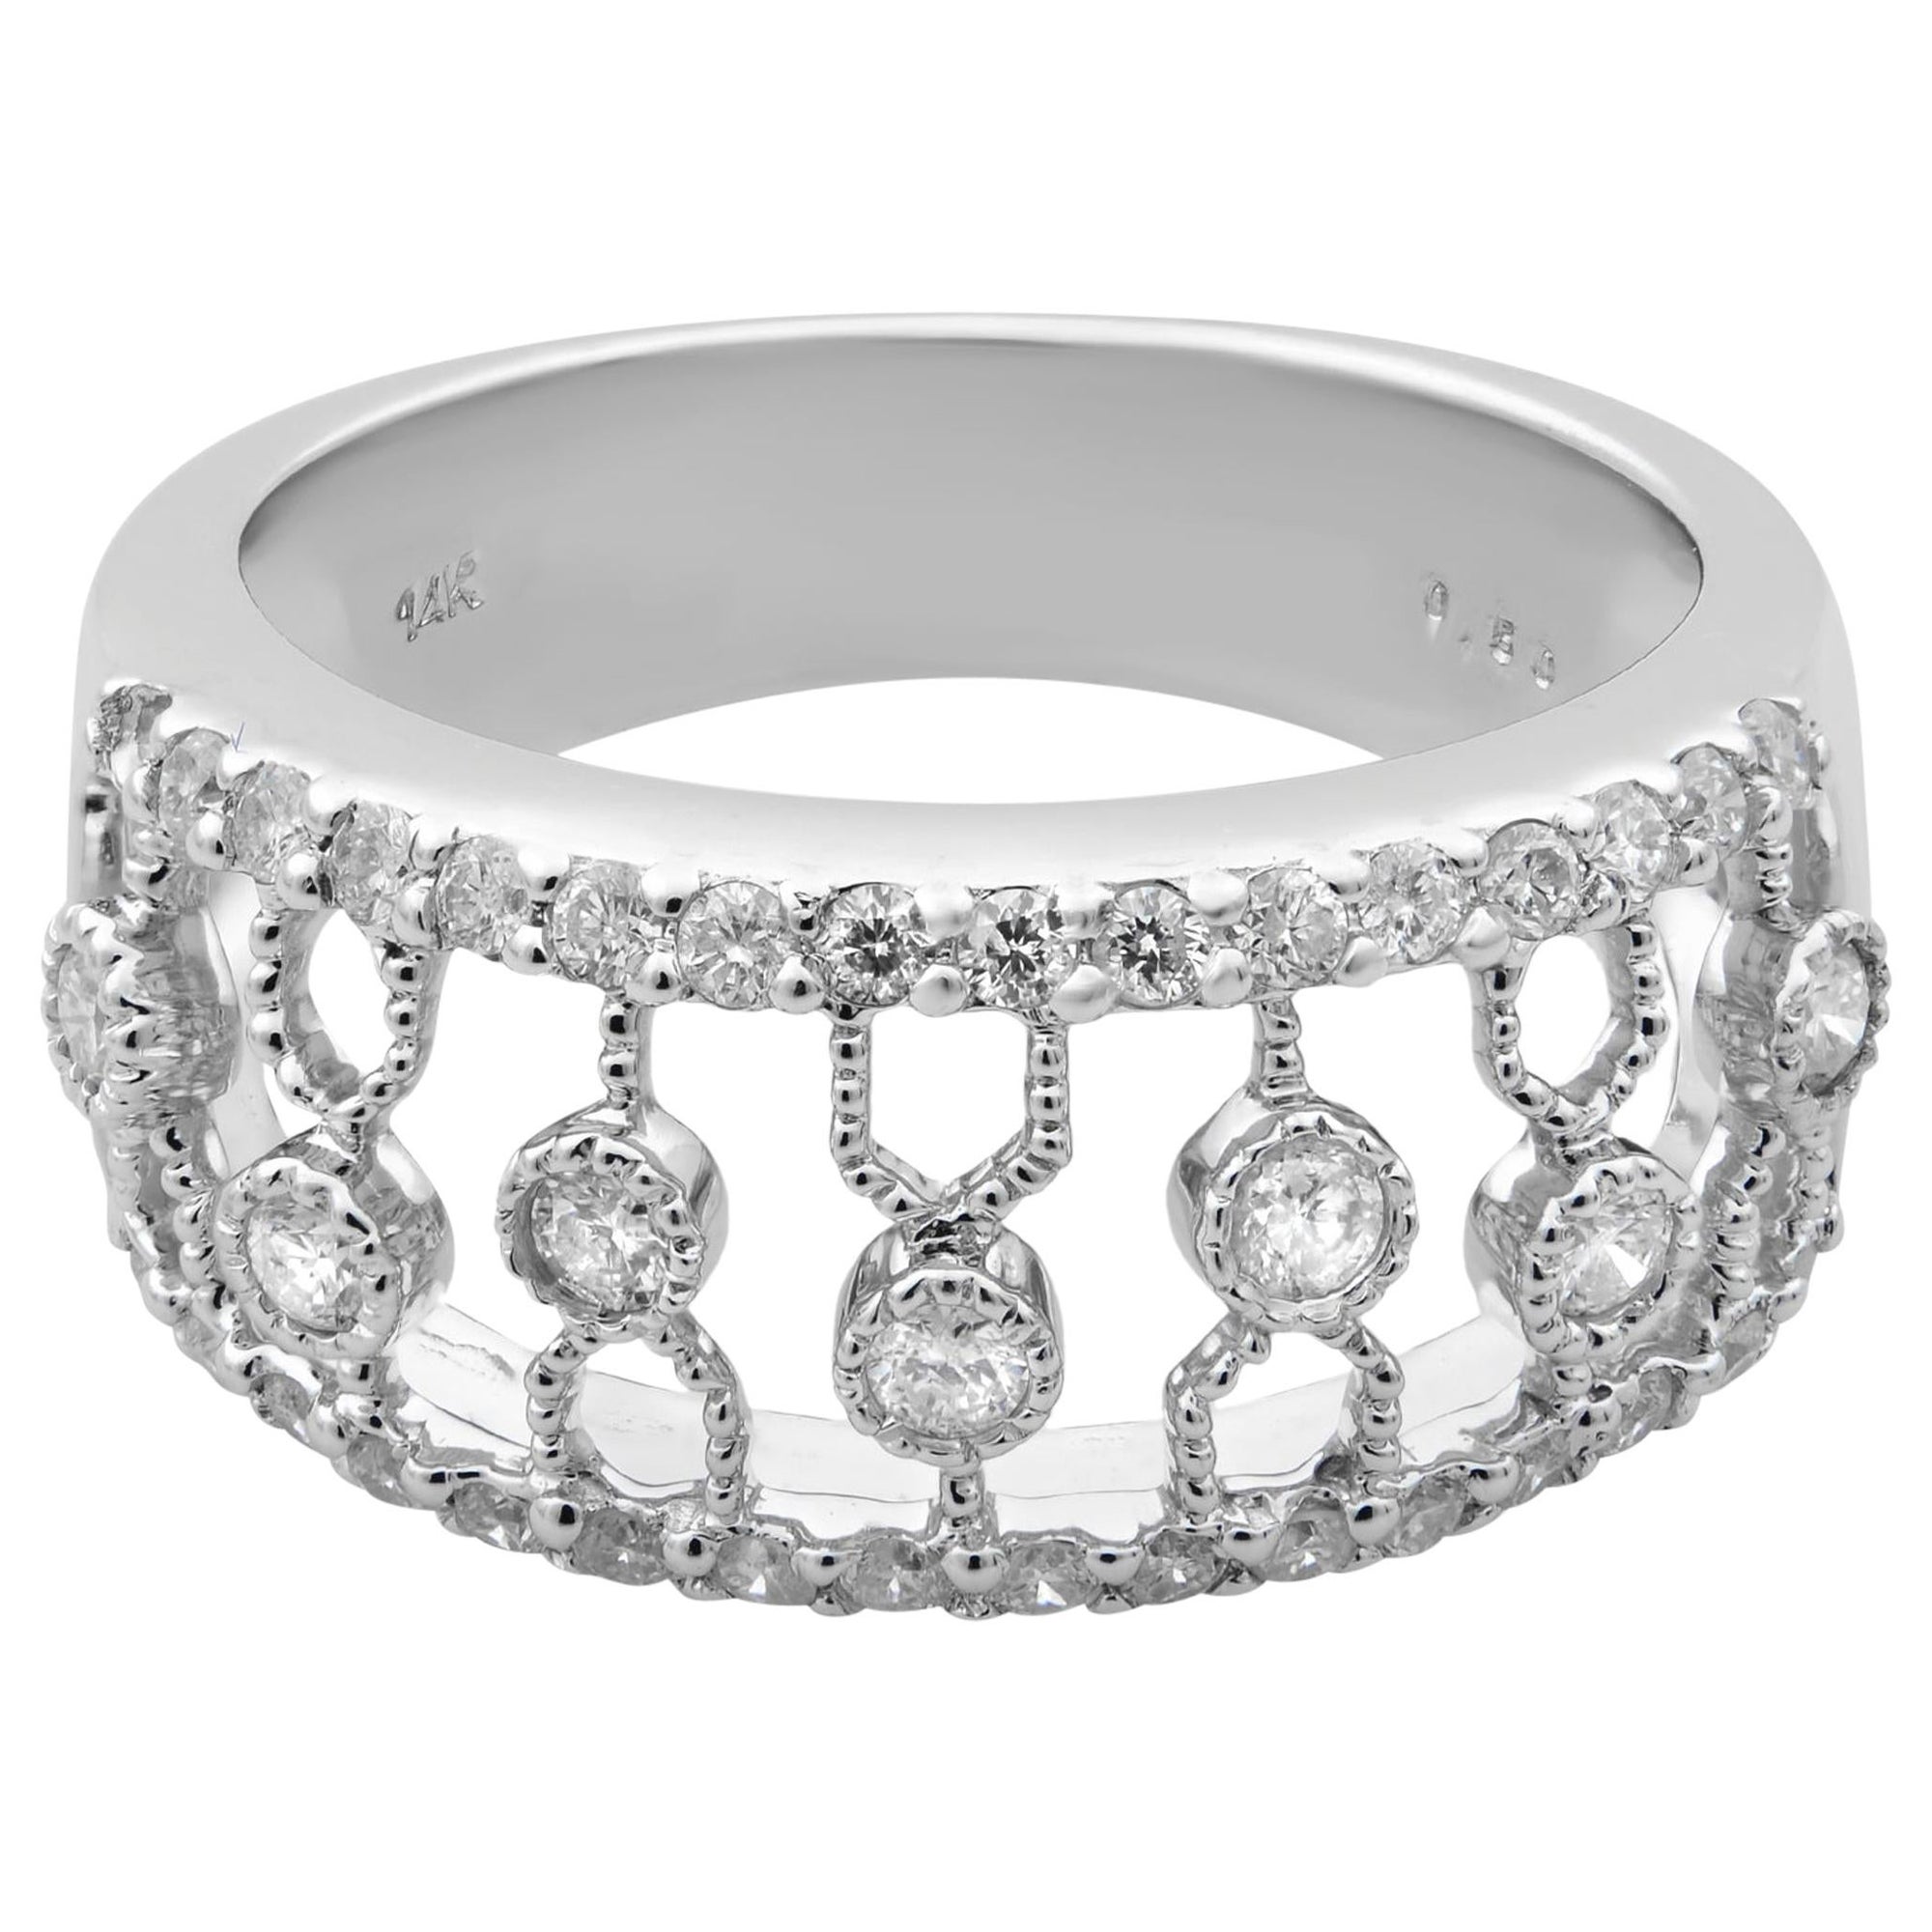 Rachel Koen Diamond Thick Band Ring 14K White Gold 0.50cttw For Sale